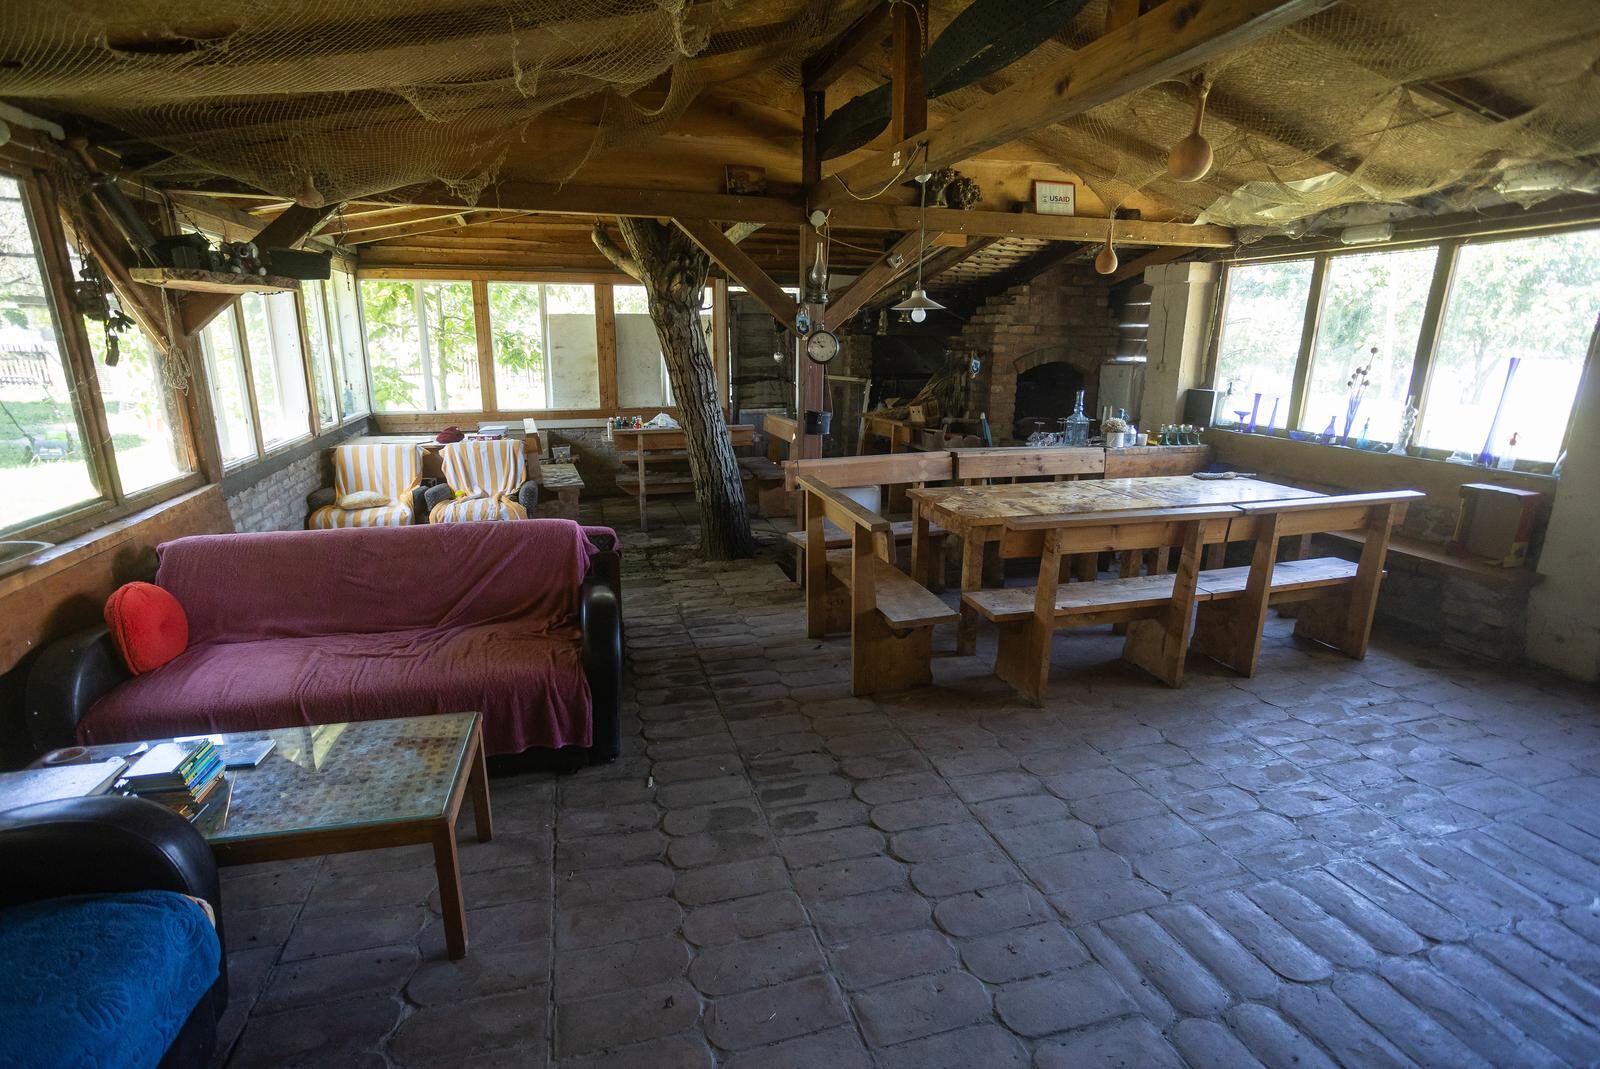 Dinka u svom domu u Šarengradu nudi besplatan smještaj umornim putnicima i usamljenim ljudima